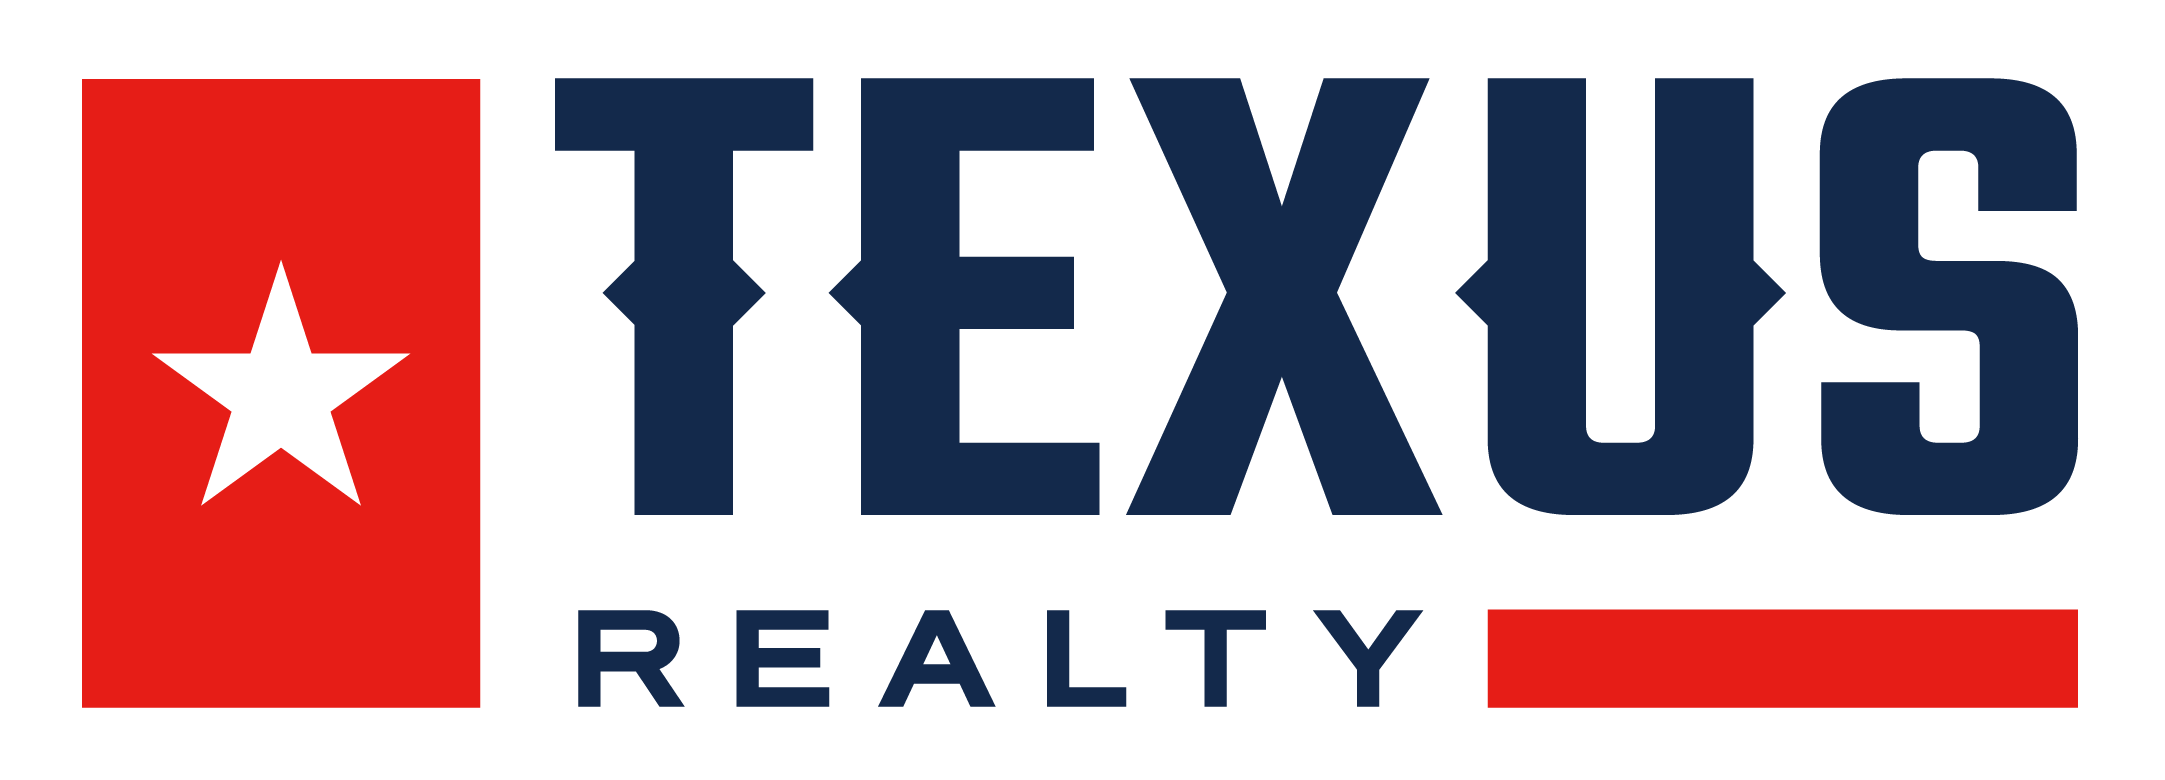 Texus Realty